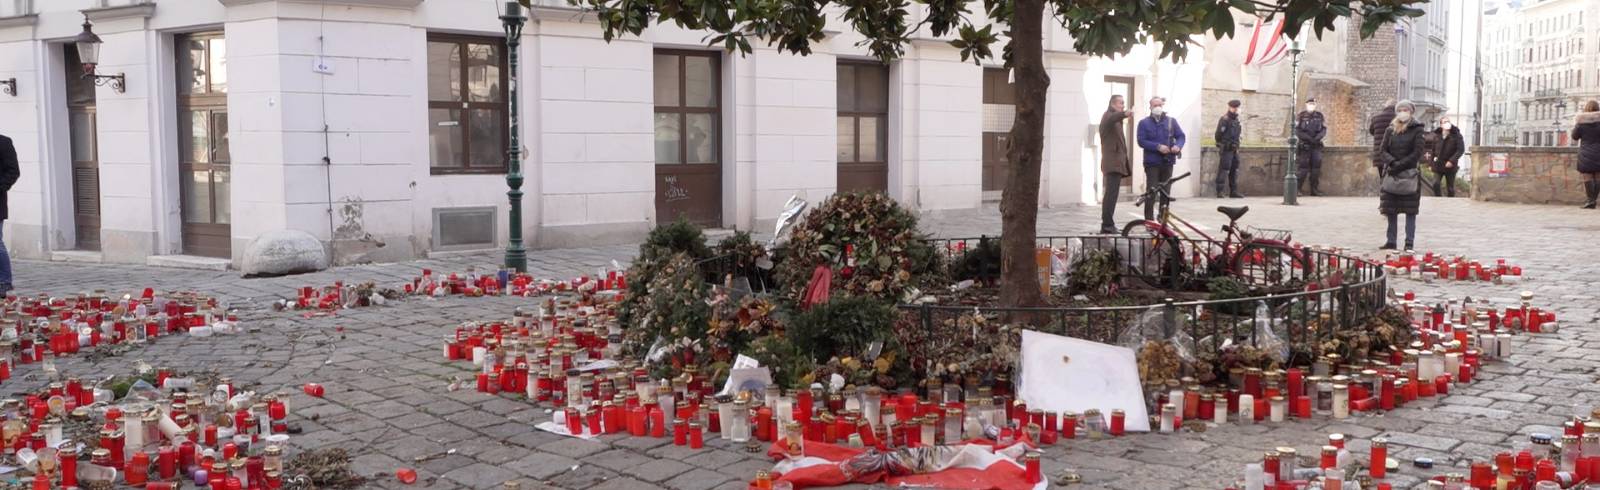 Terroranschlag: Stadt errichtet Gedenkstein